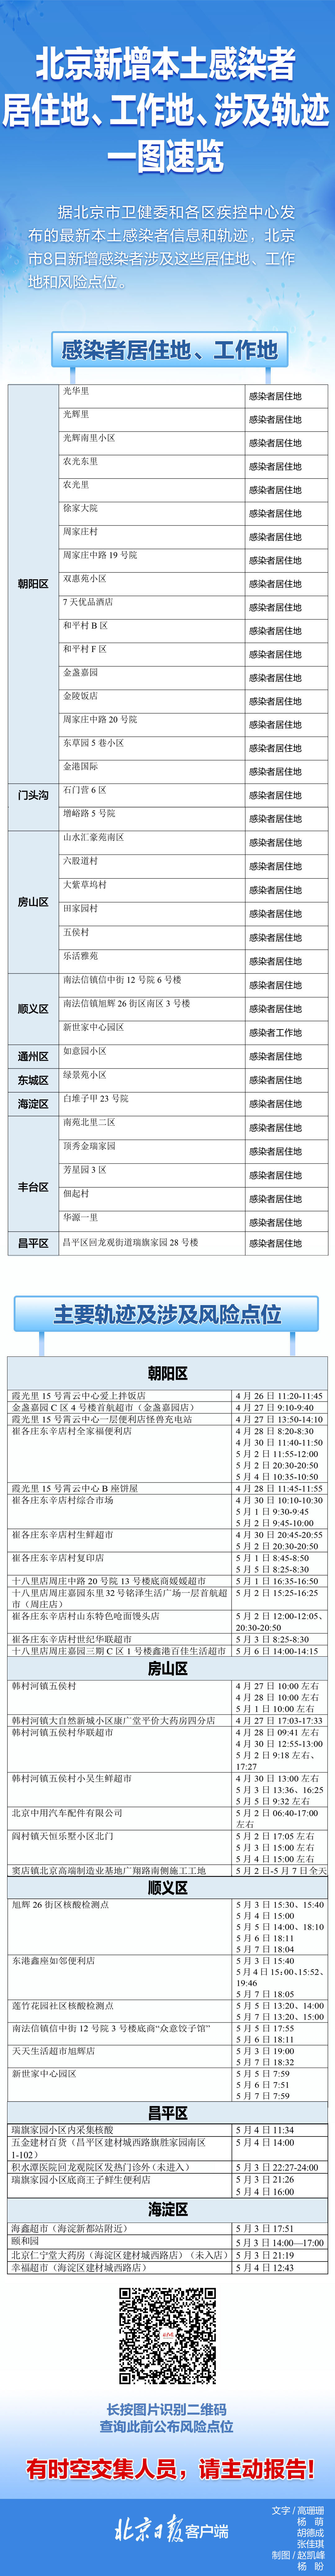 速自查!北京8日新增感染者居住地、工作地、风险点位一图速览